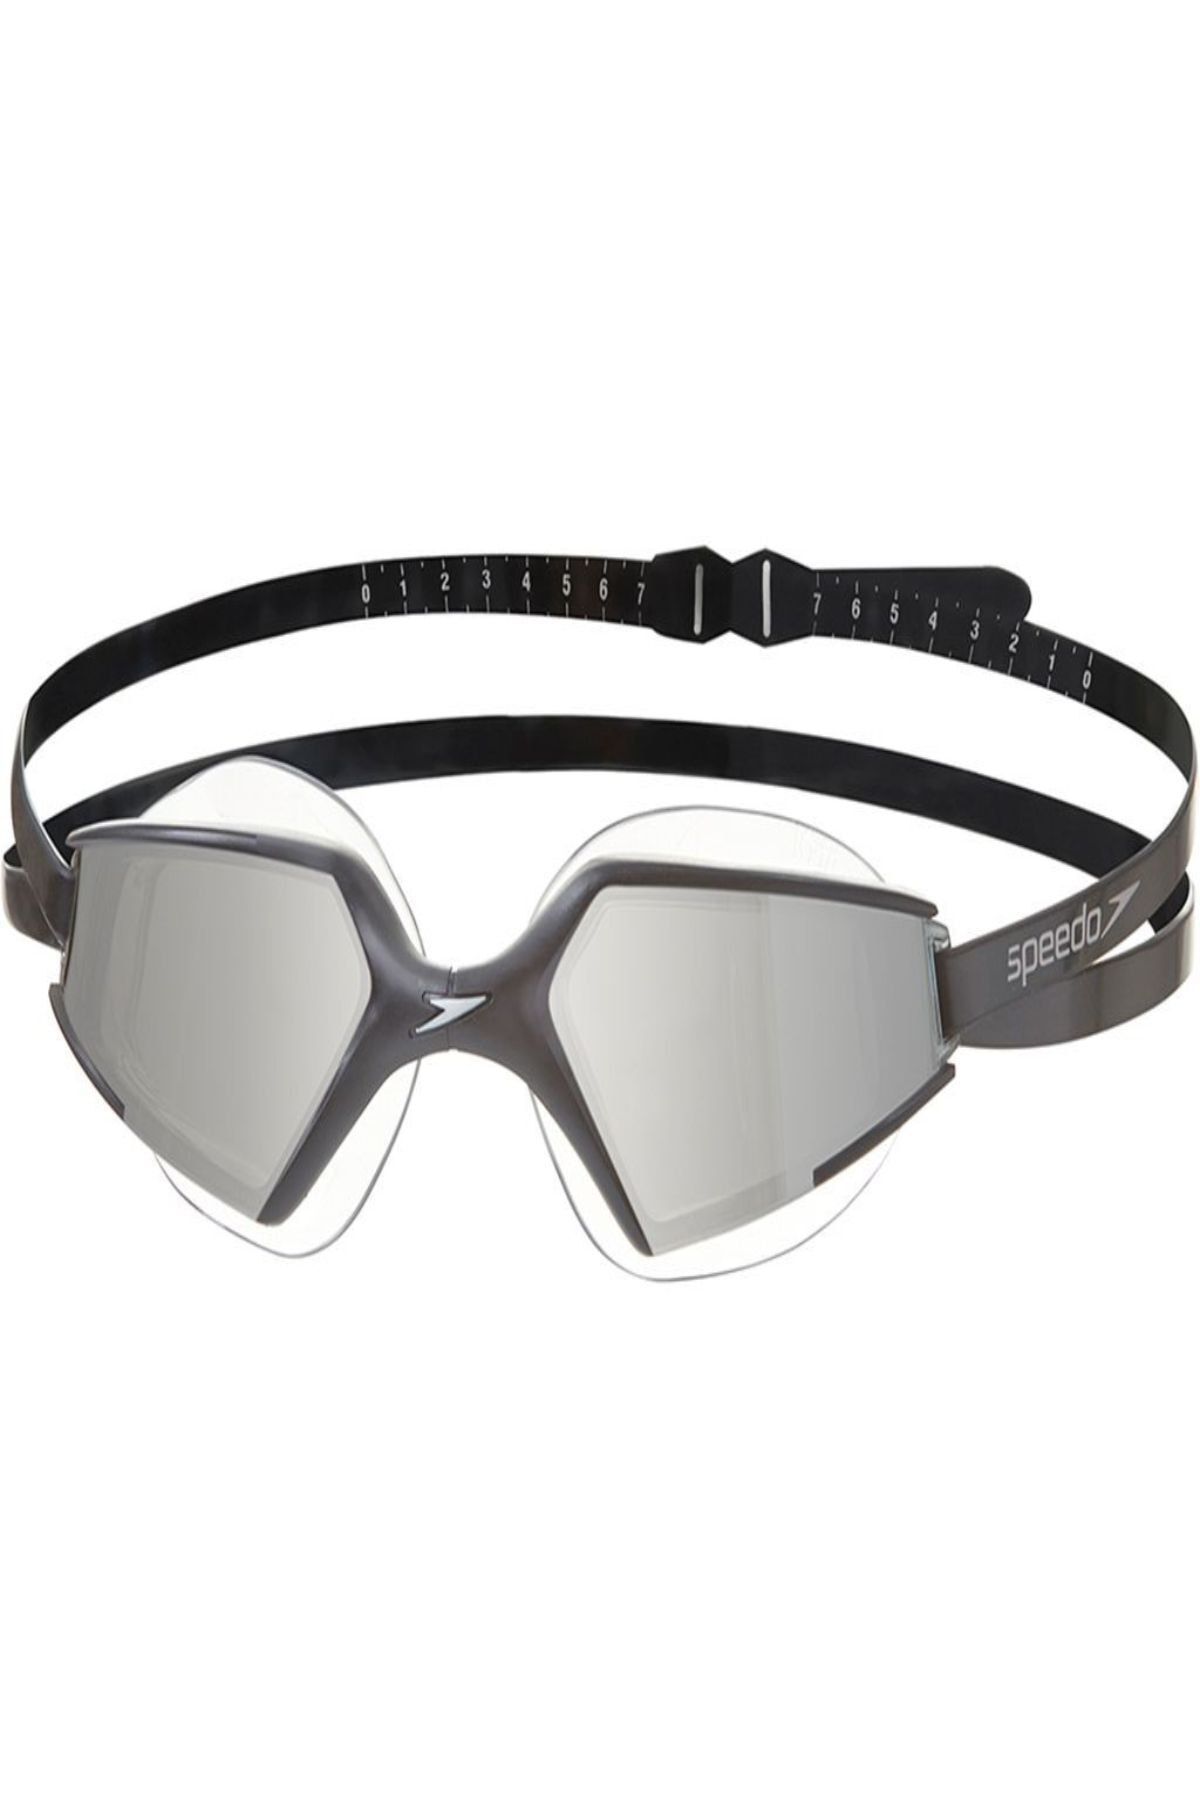 SPEEDO Aquapulse Max 2 Aynalı Yüzücü Gözlüğü